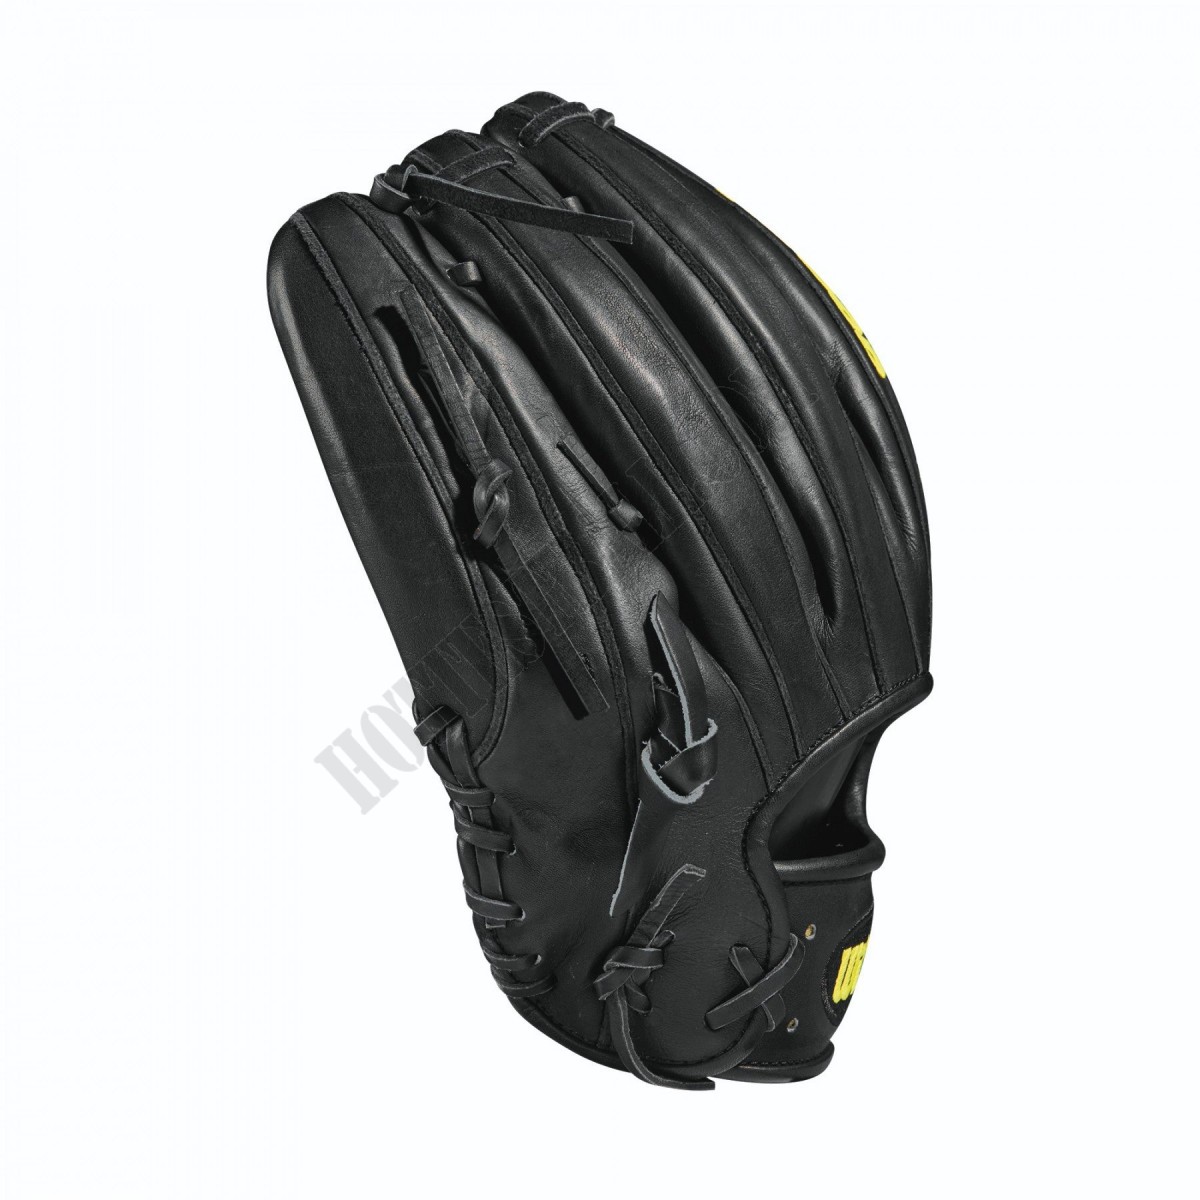 2021 A2000 CK22 GM 11.75" Pitcher's Baseball Glove ● Wilson Promotions - -4